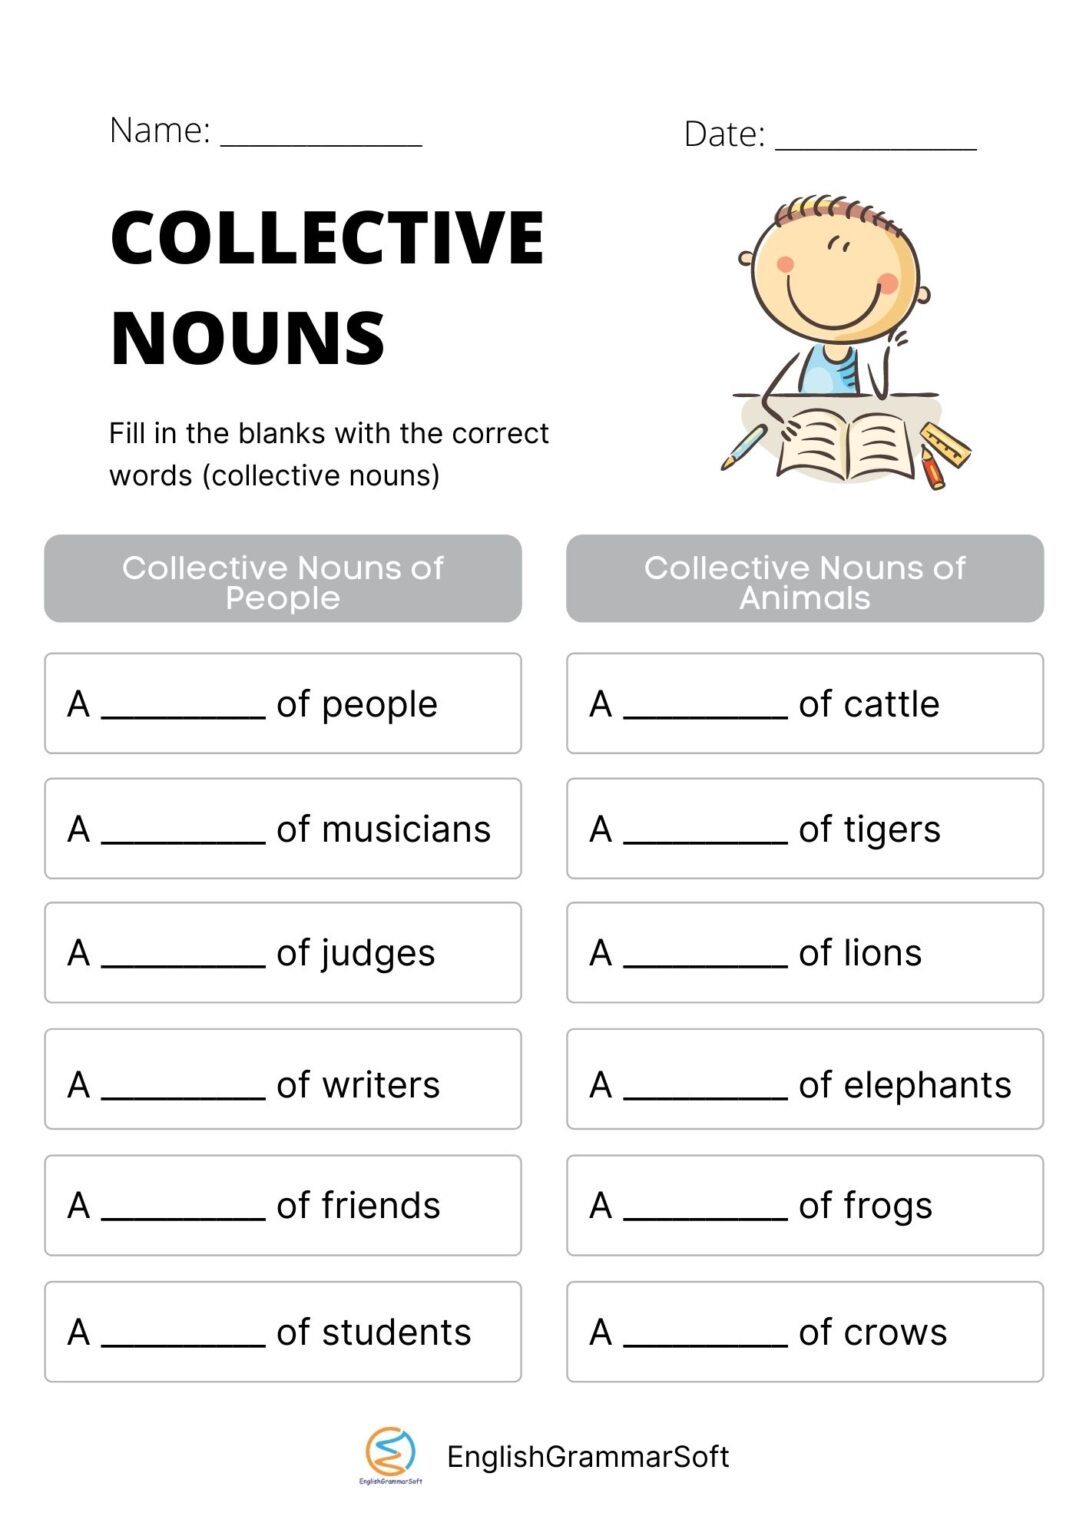 homework in collective noun